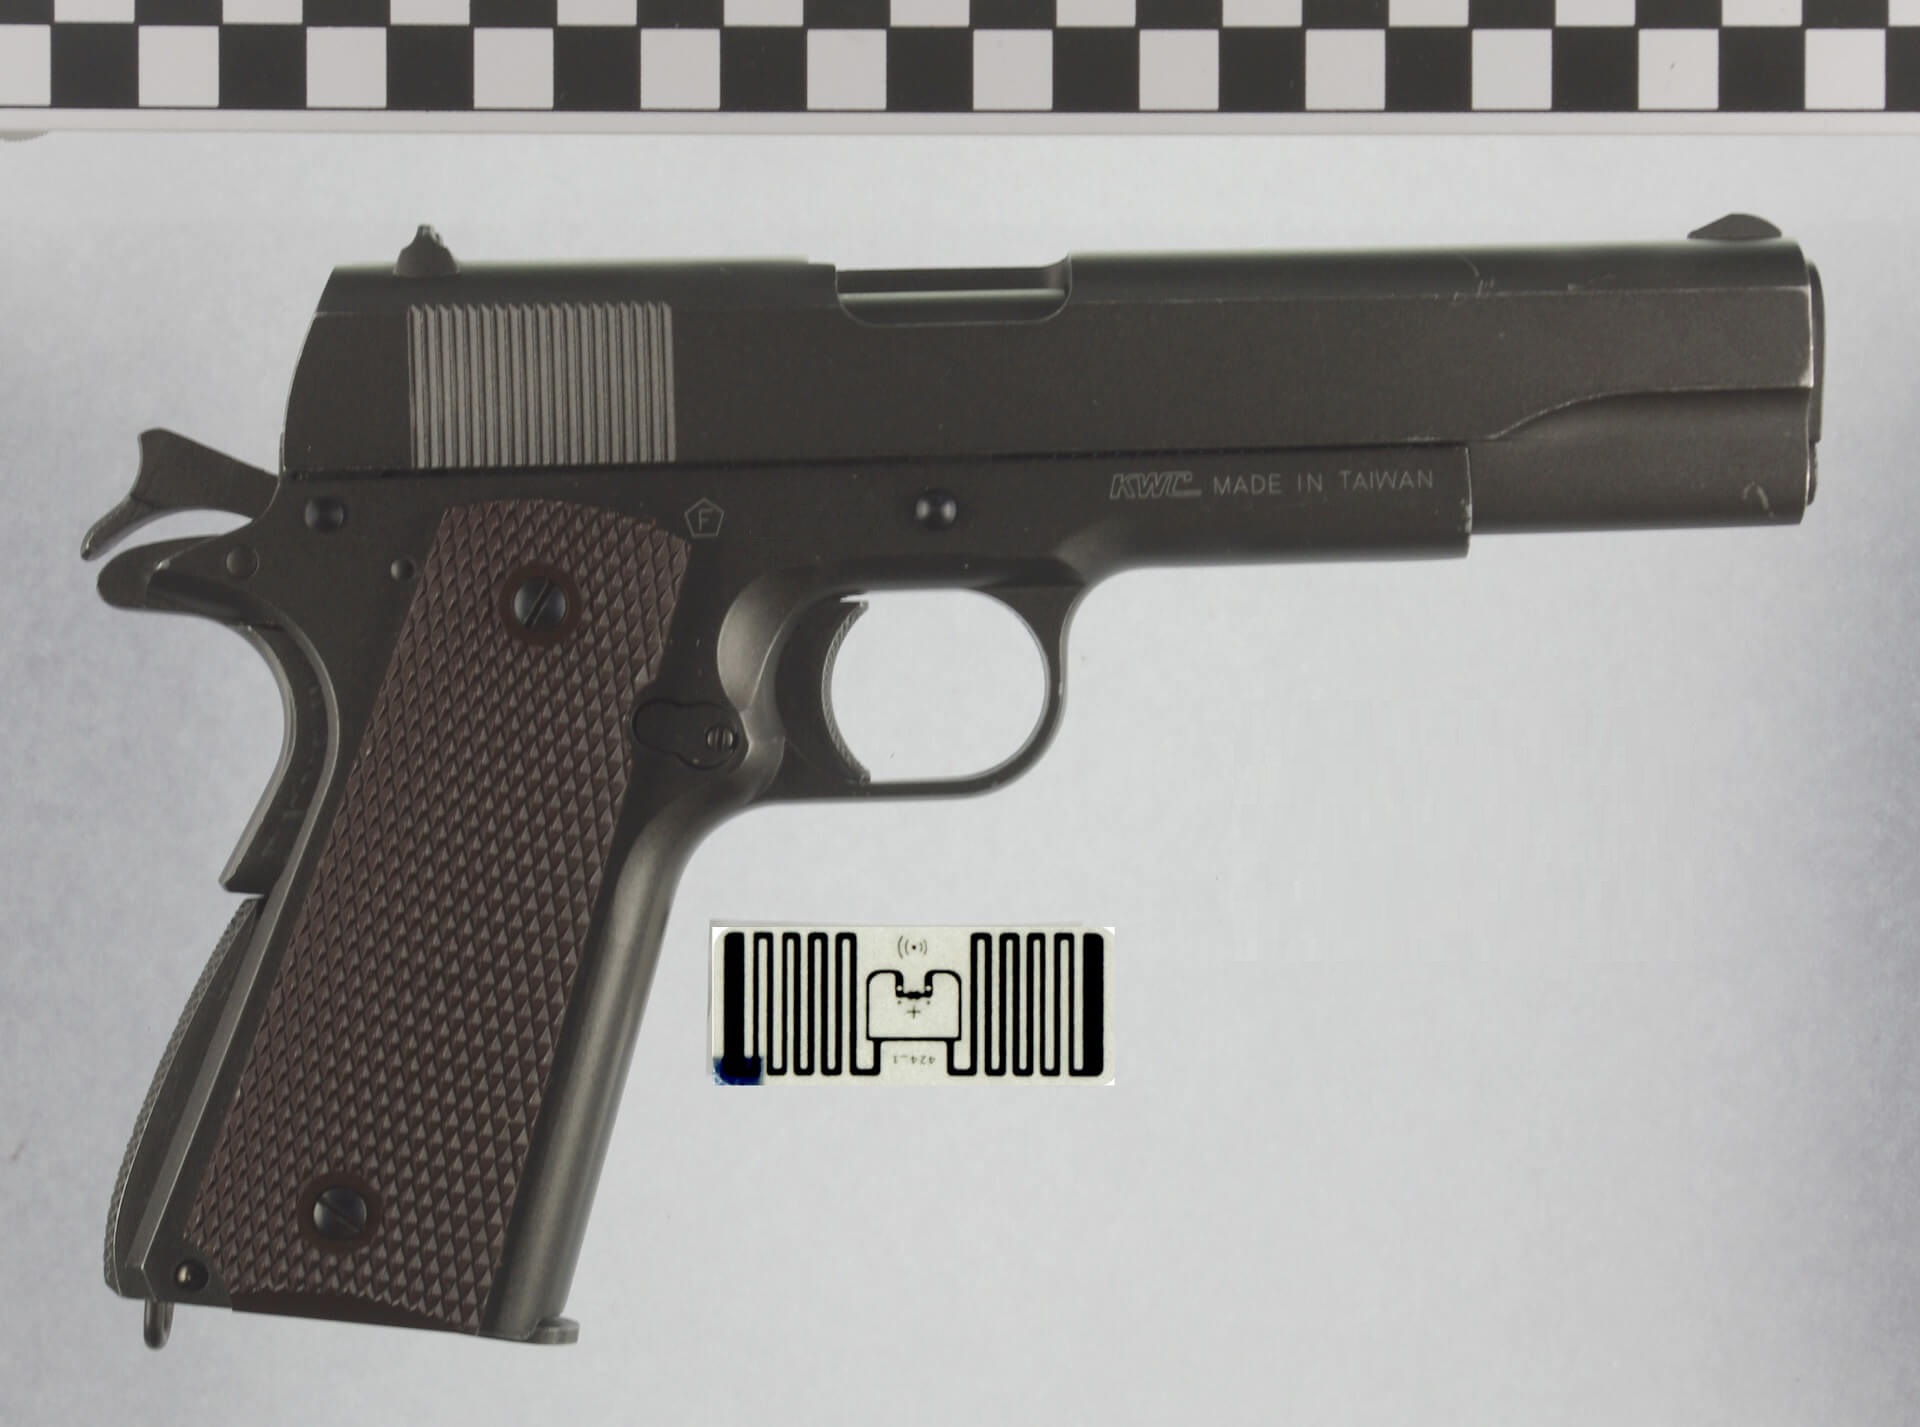 Gun described as forensic evidence